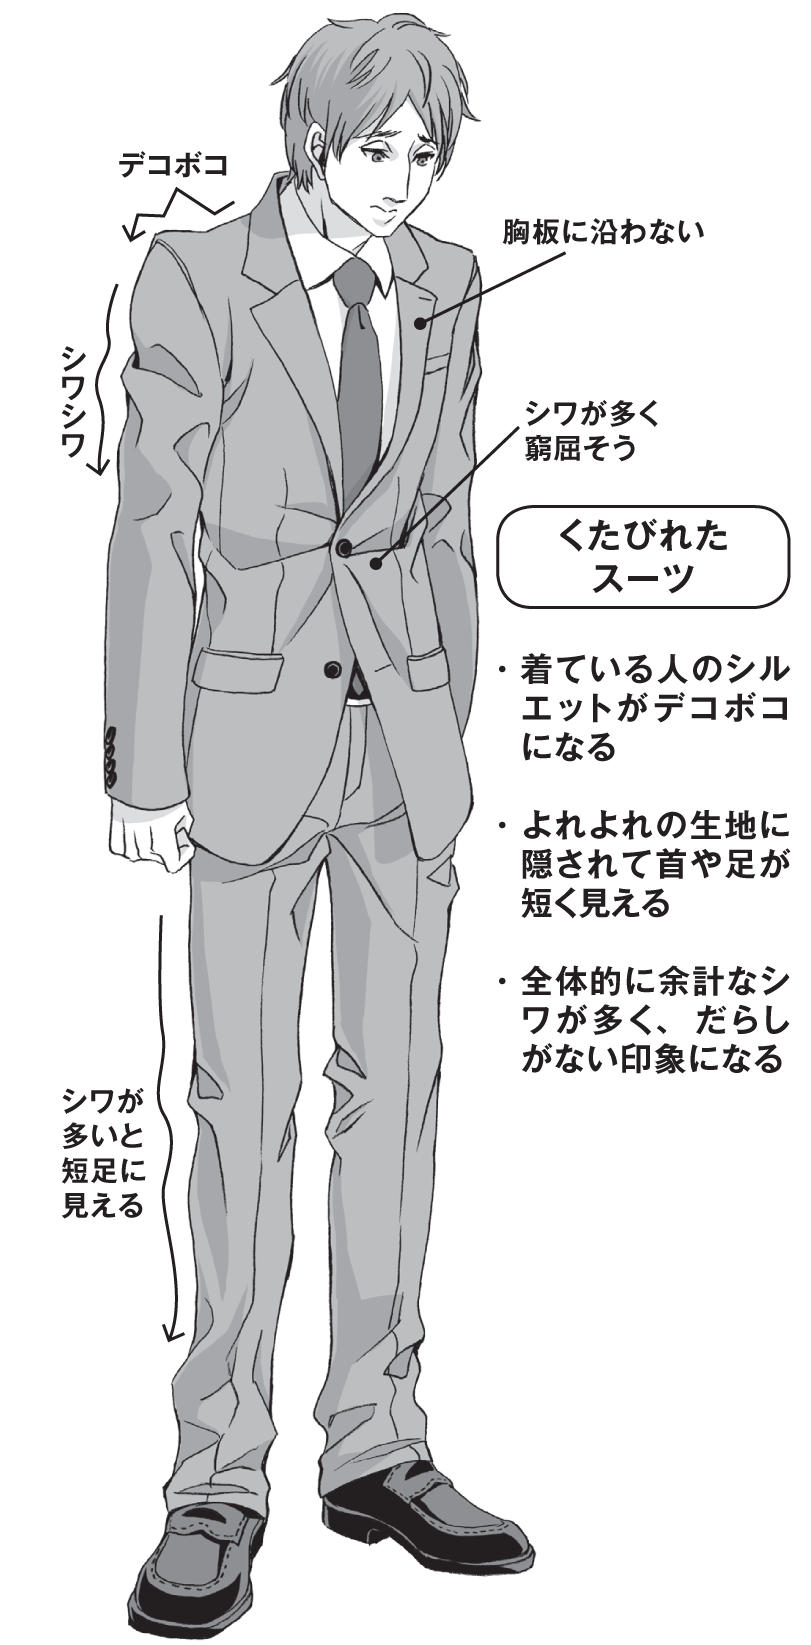 インストラクター 対称 古い スーツ 描き方 男性 Himekko Jp